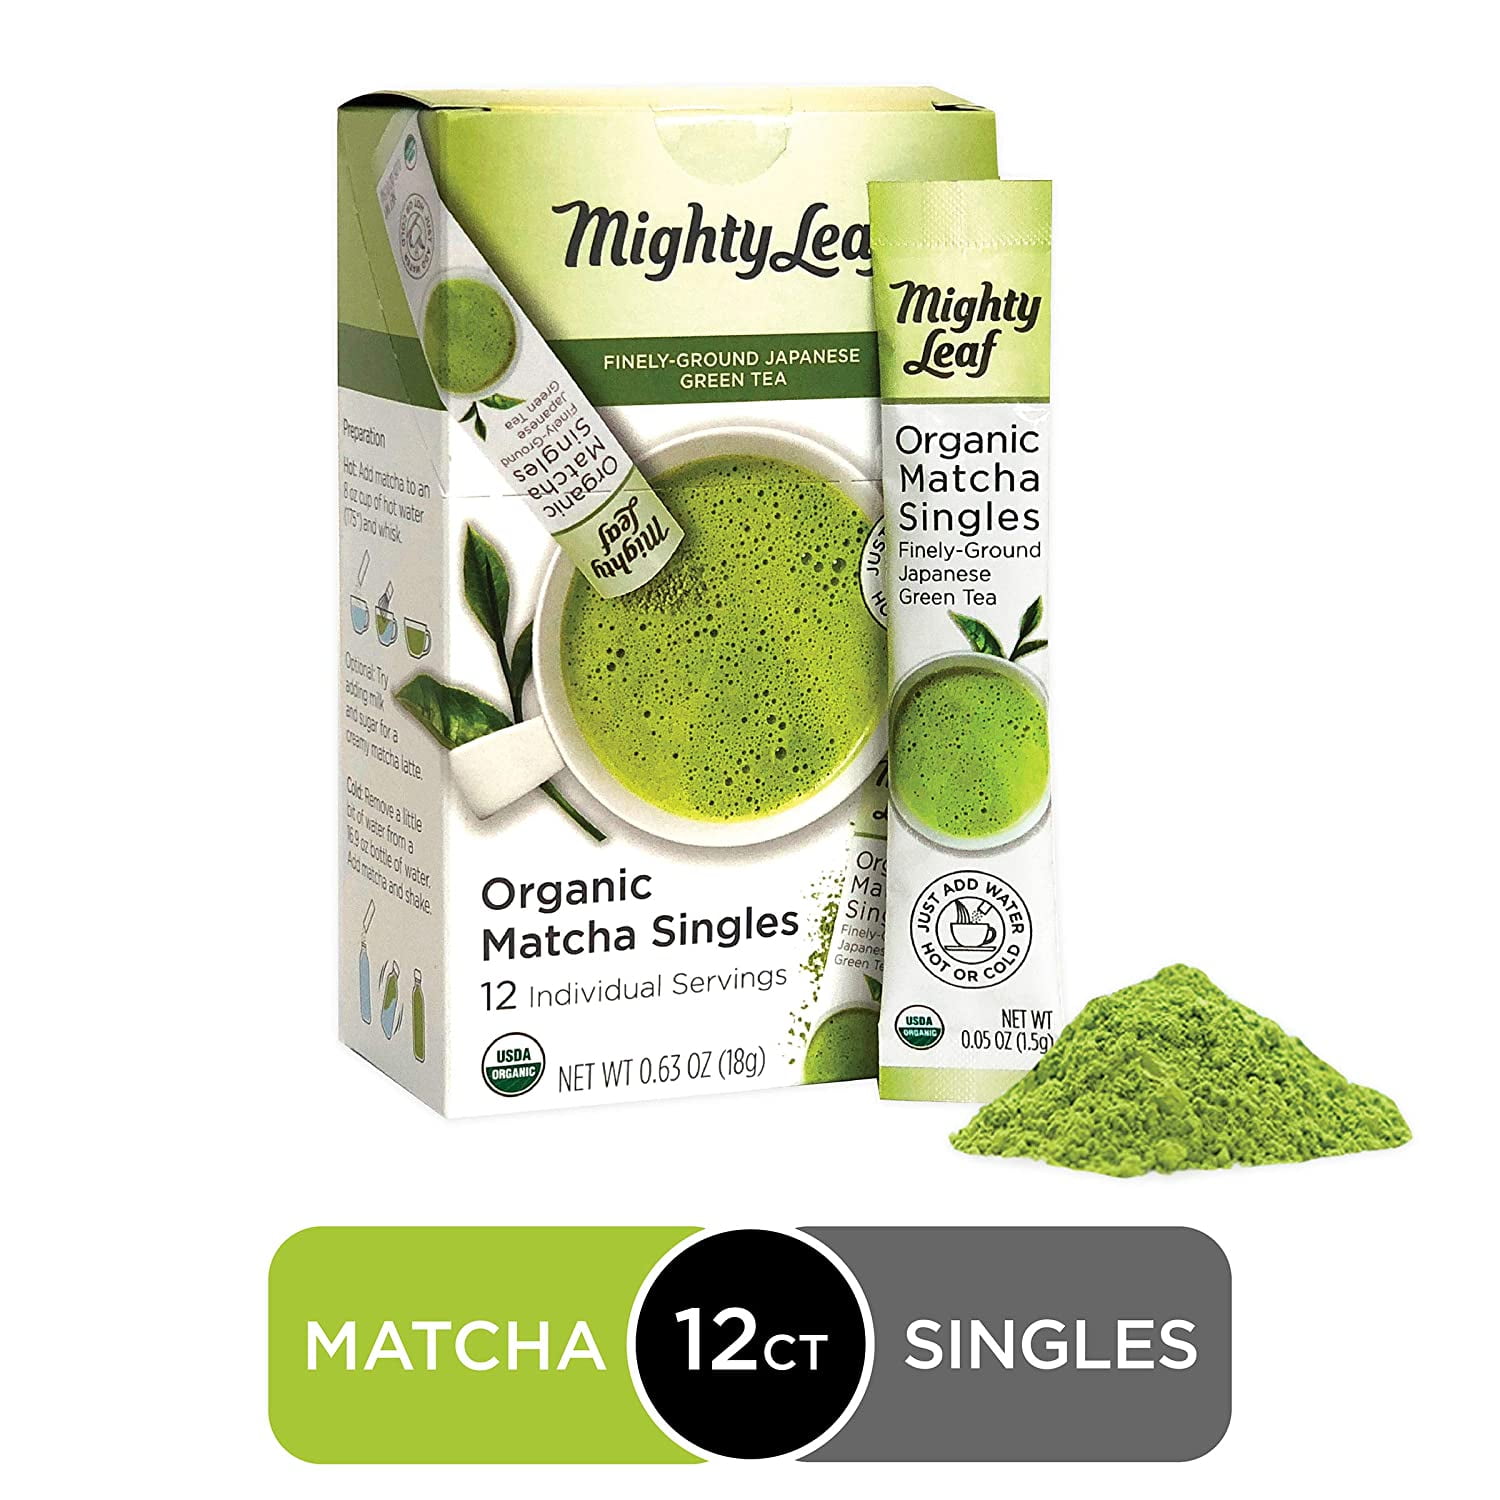 MATCHA green tea for modern warriors, Organic - 100 cup pouch